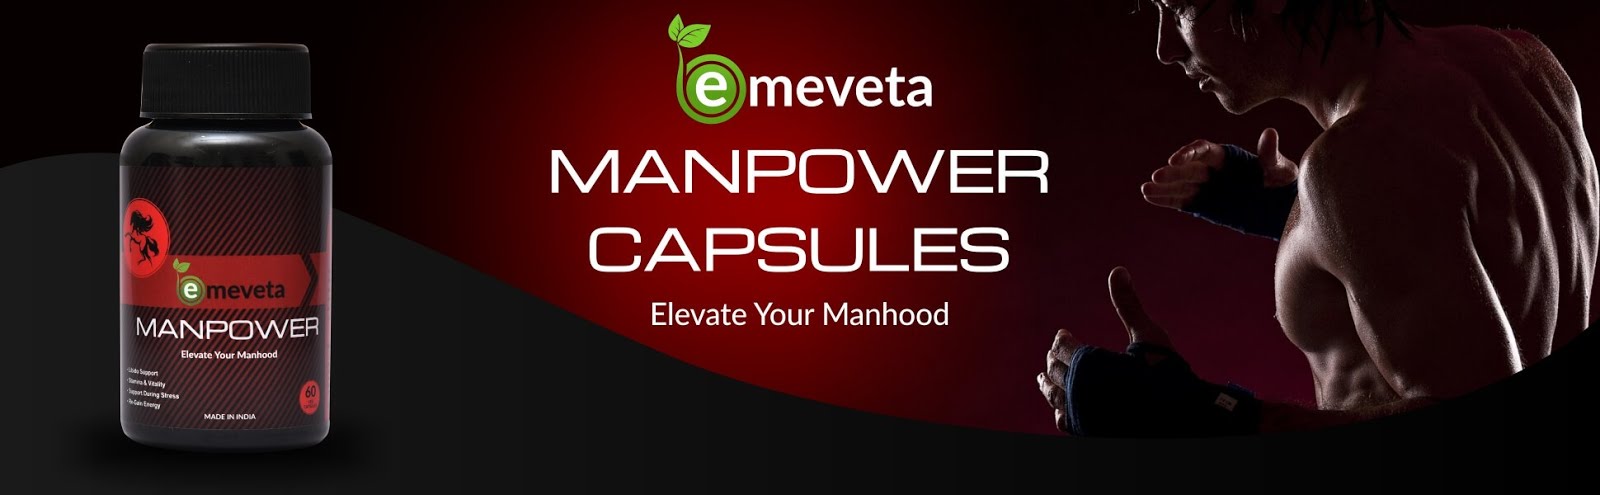 Emeveta - Energy Boost Vitamin Supplement for Male Fertility